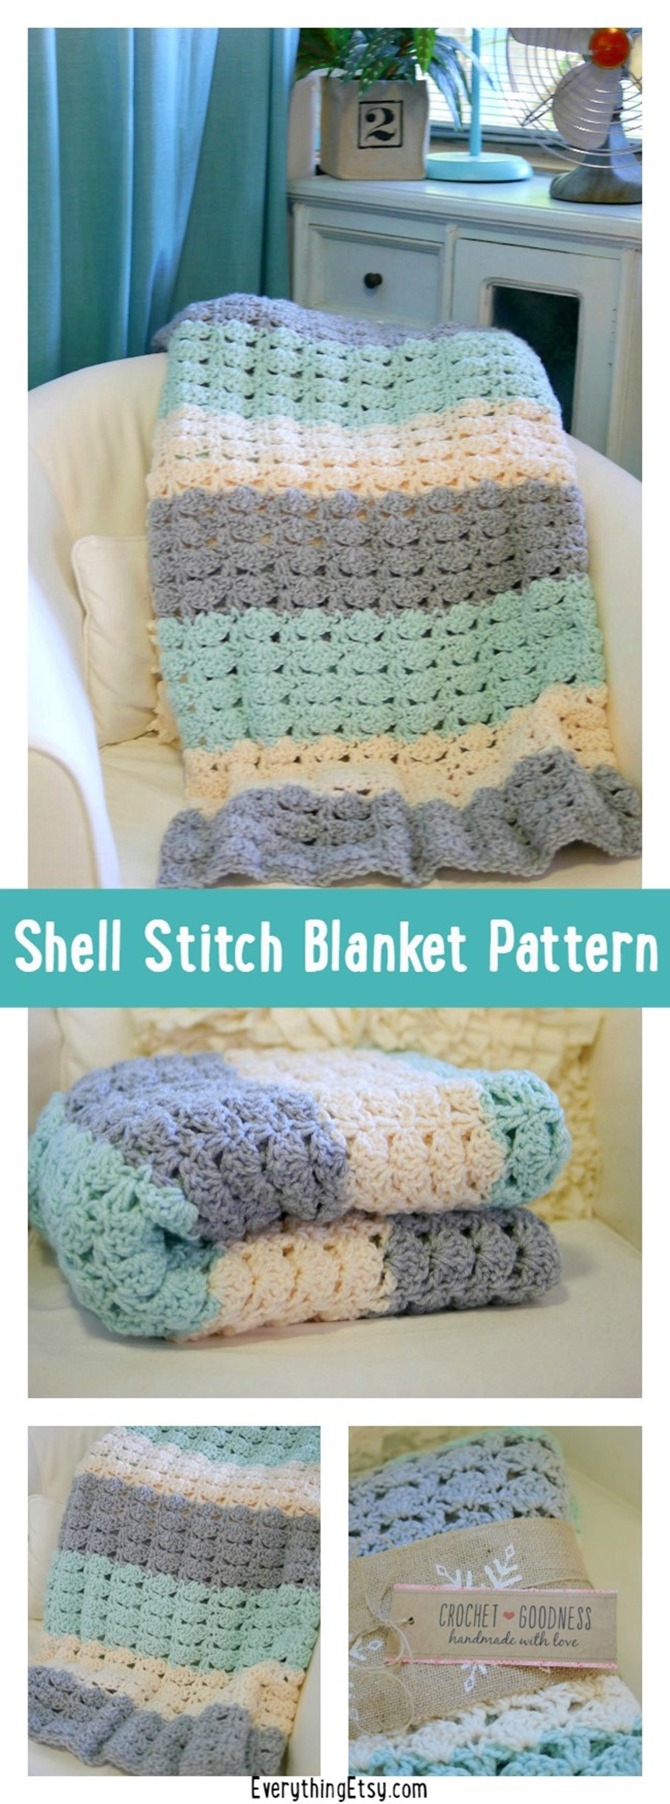 Easy Crochet Shell Stitch Blanket Pattern